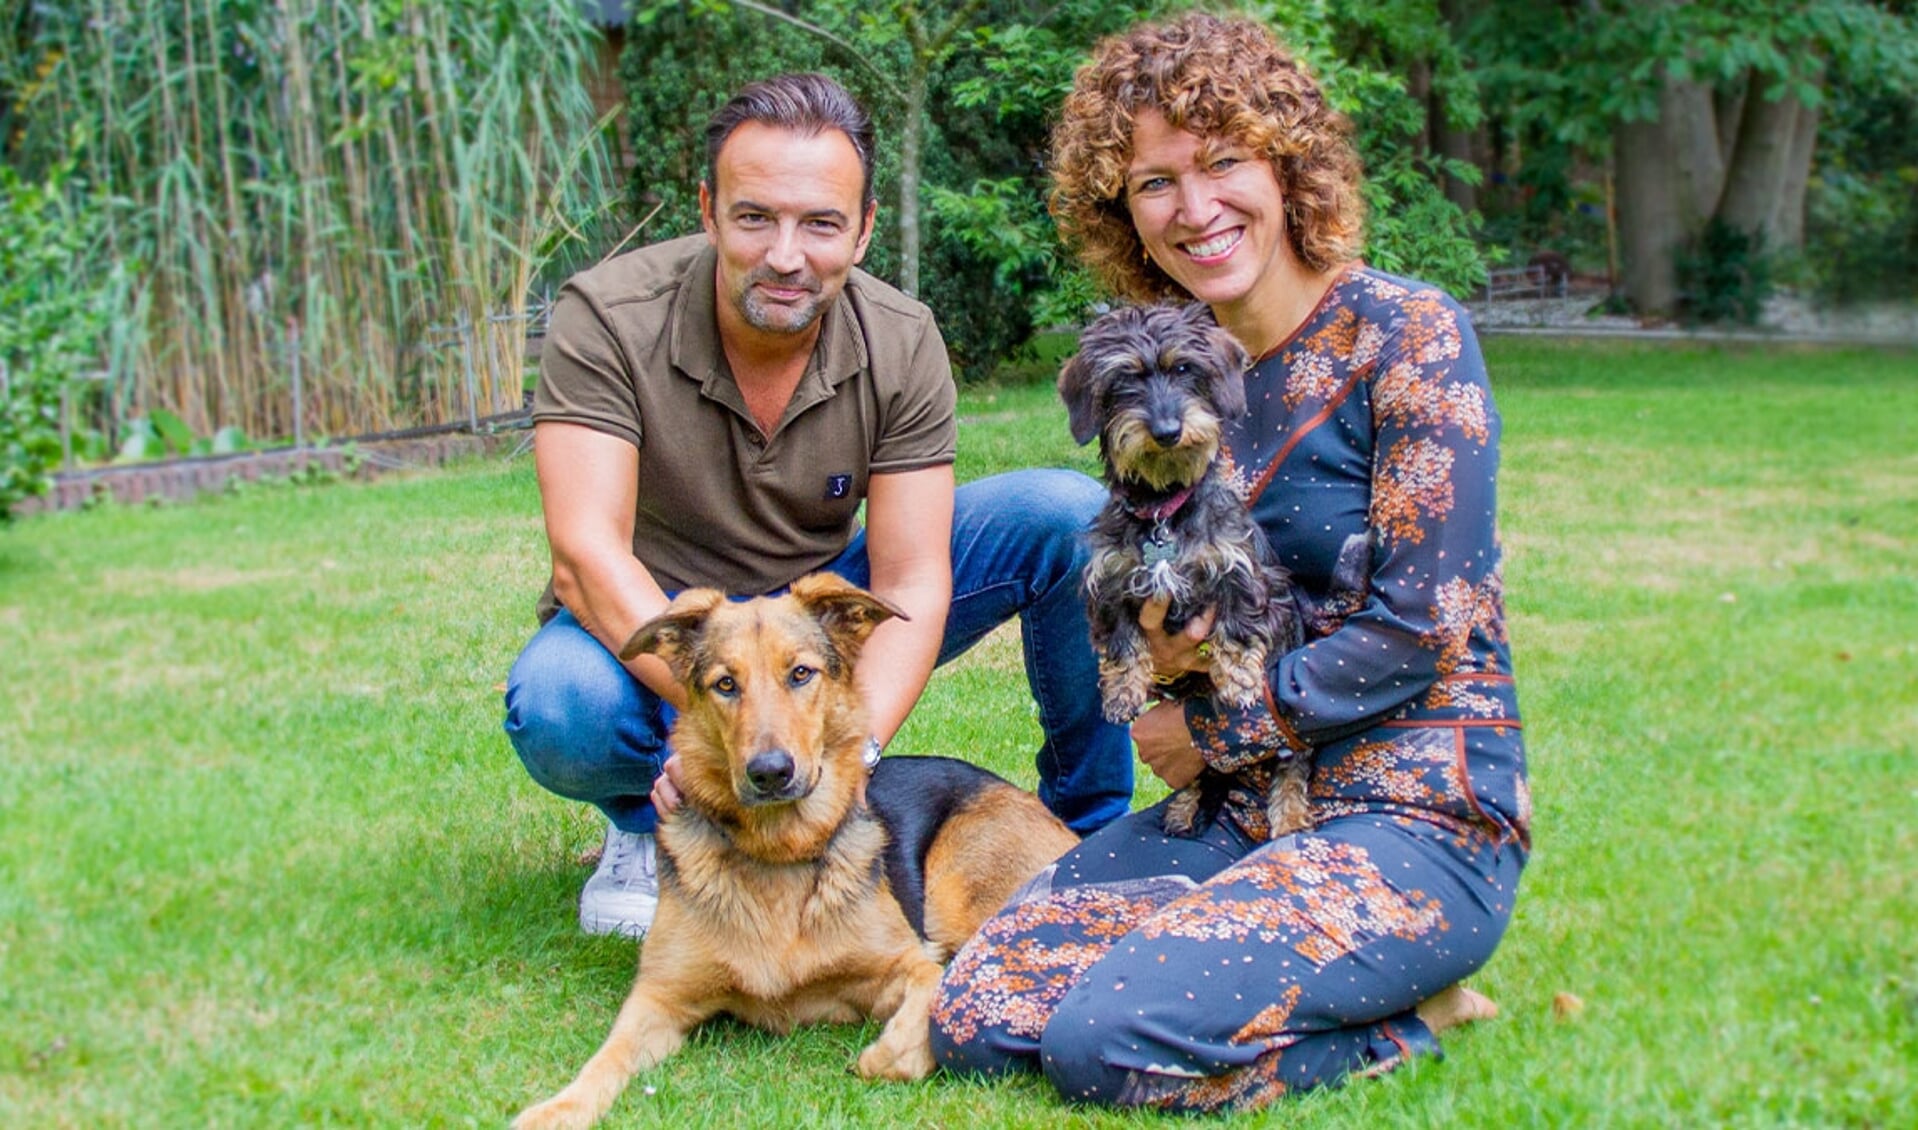 Radio 10-dj Gerad Ekdom en zijn sidekick Evelien de Bruijn zijn weer op zoek naar de leukte hond van Nederland